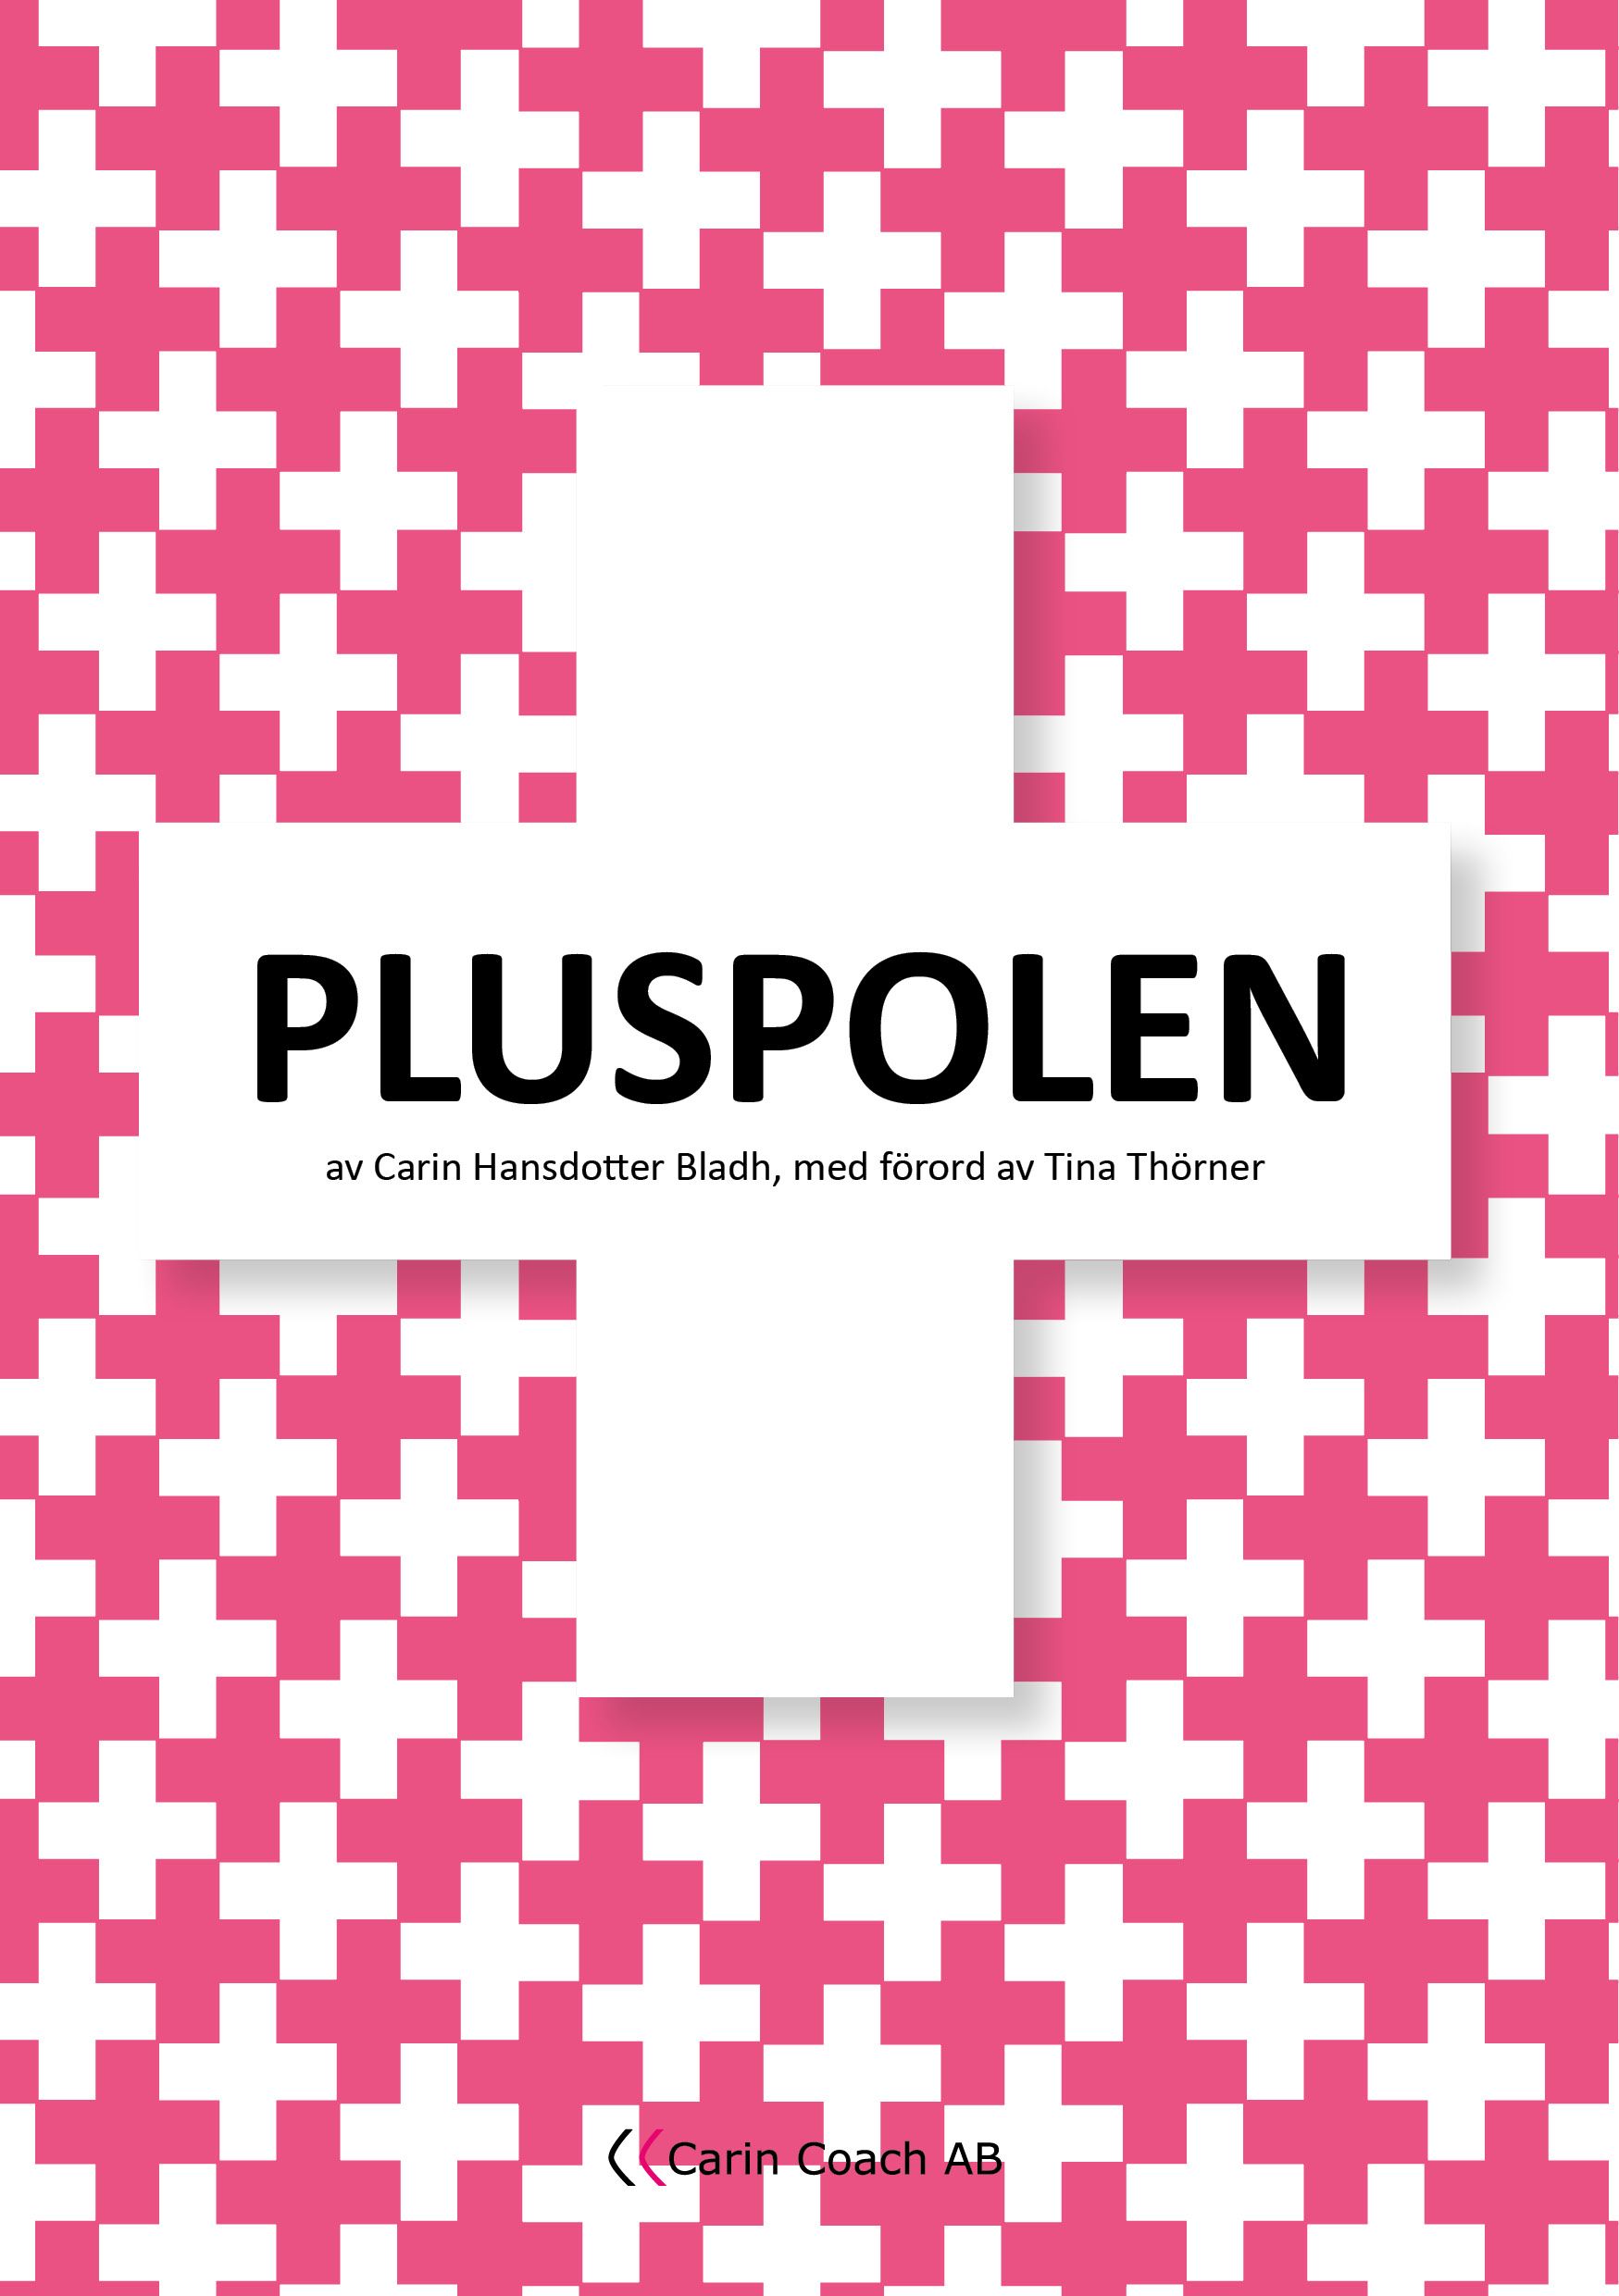 PLUSPOLEN, eBook by Carin Hansdotter Bladh